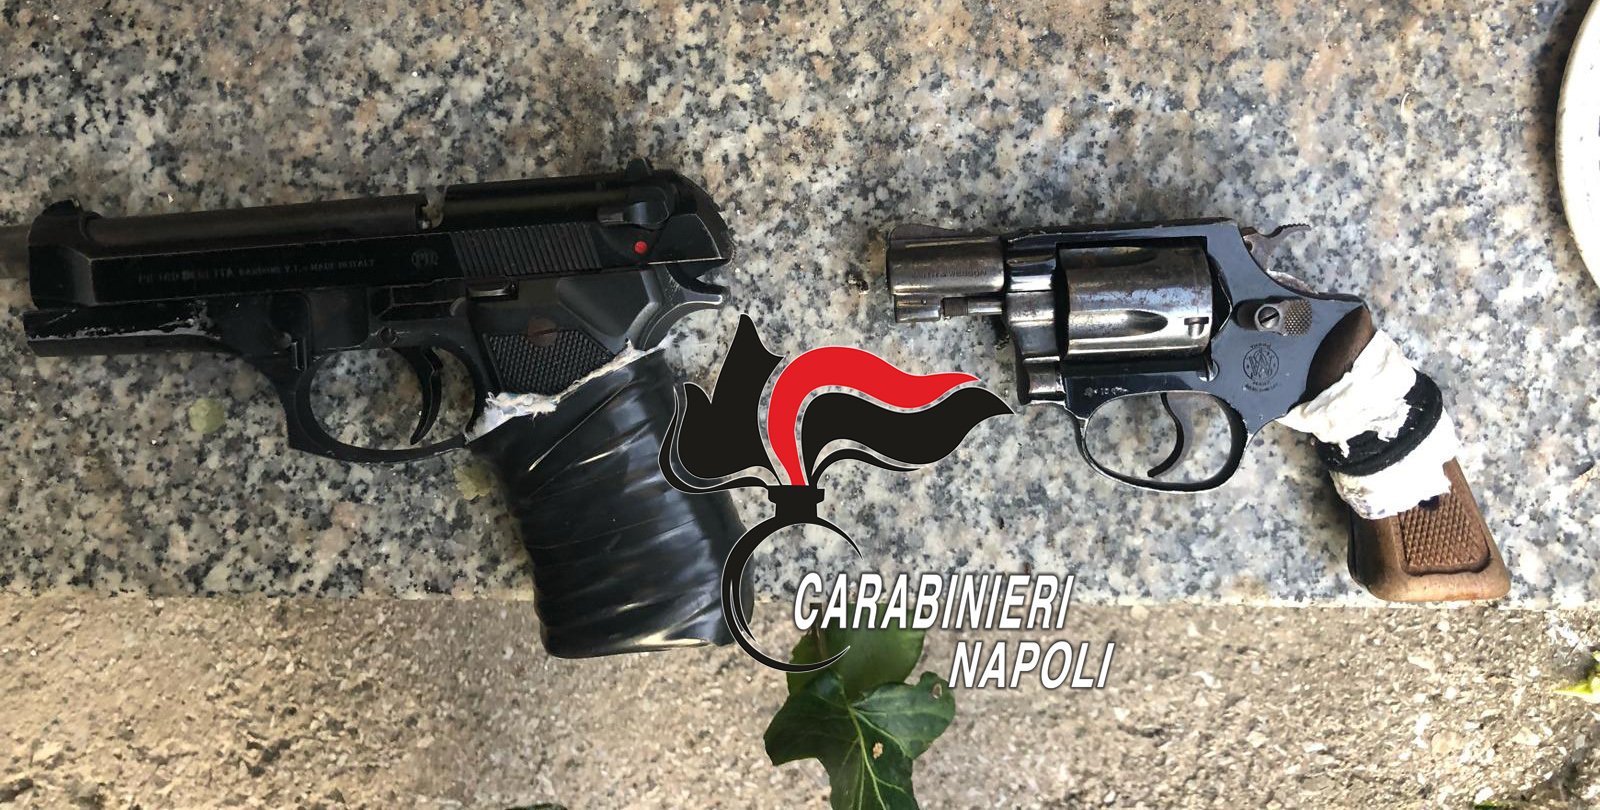 Napoli, due pistole della faida ritrovate a Soccavo, arresti e denunce anche a Pianura e al rione Traiano. IL VIDEO